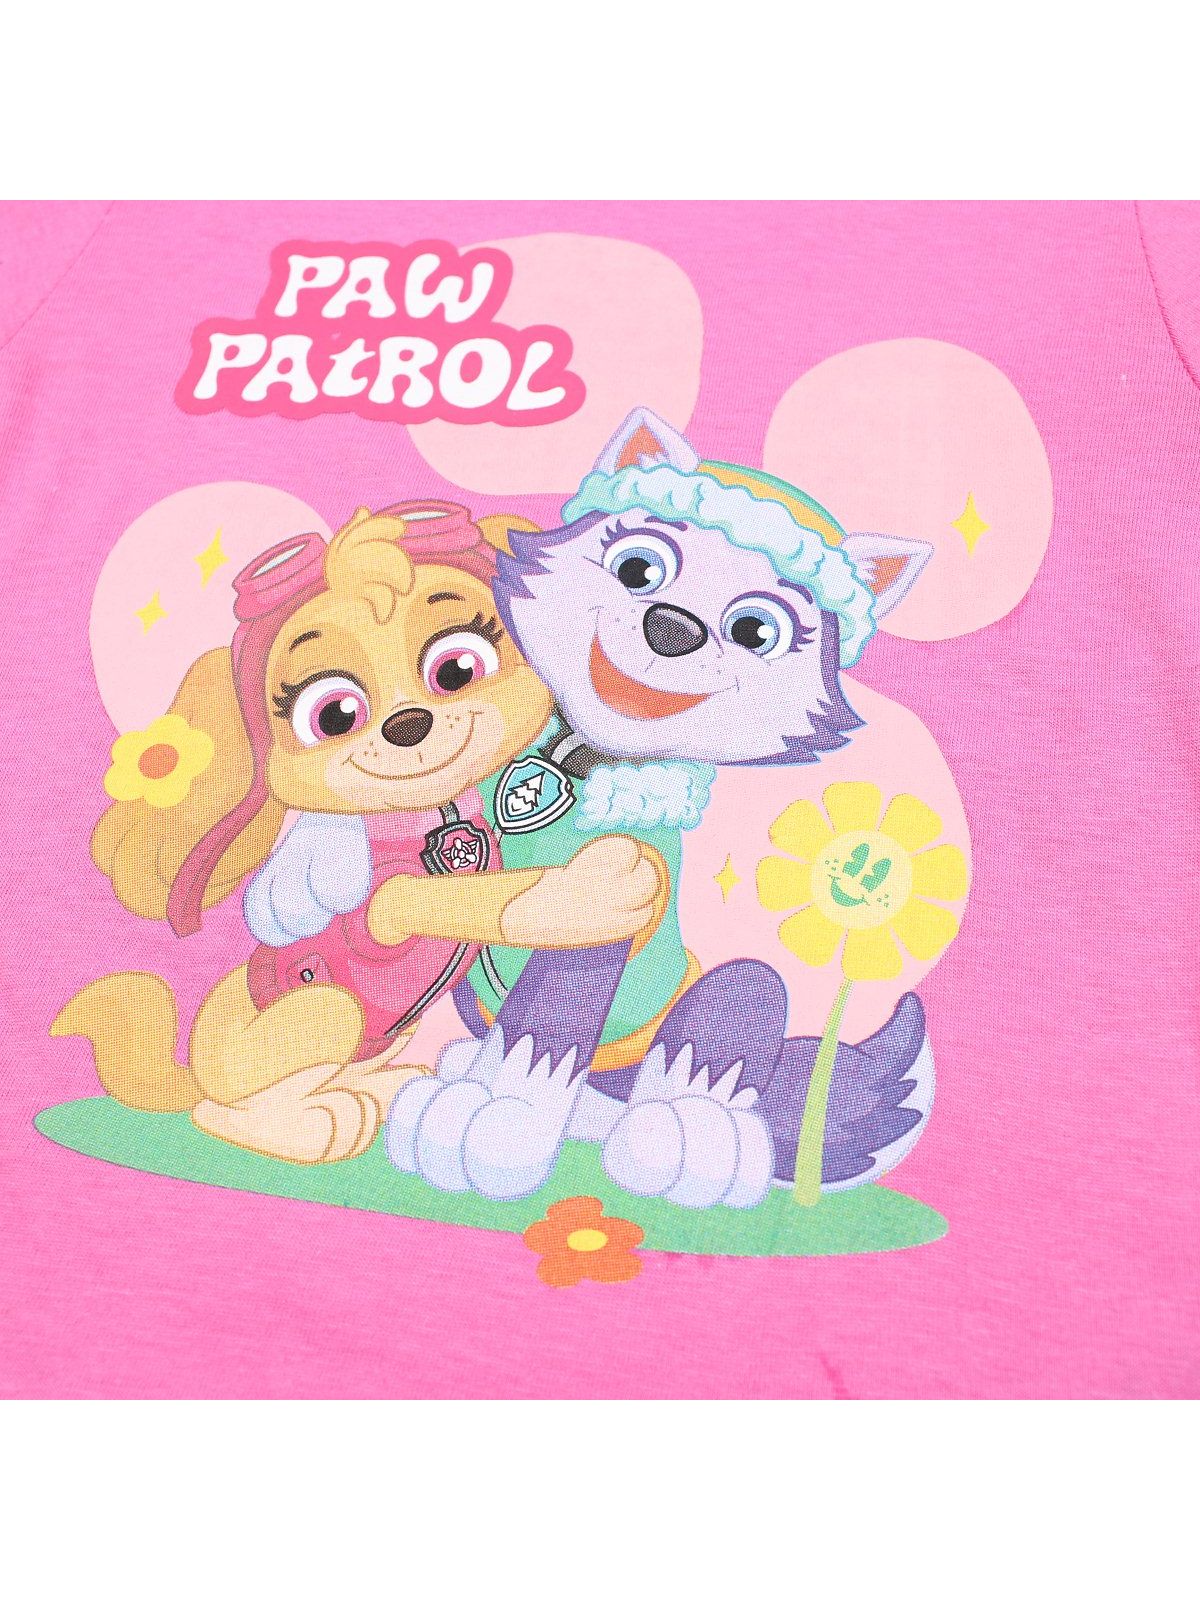 T-shirt paw patrol.